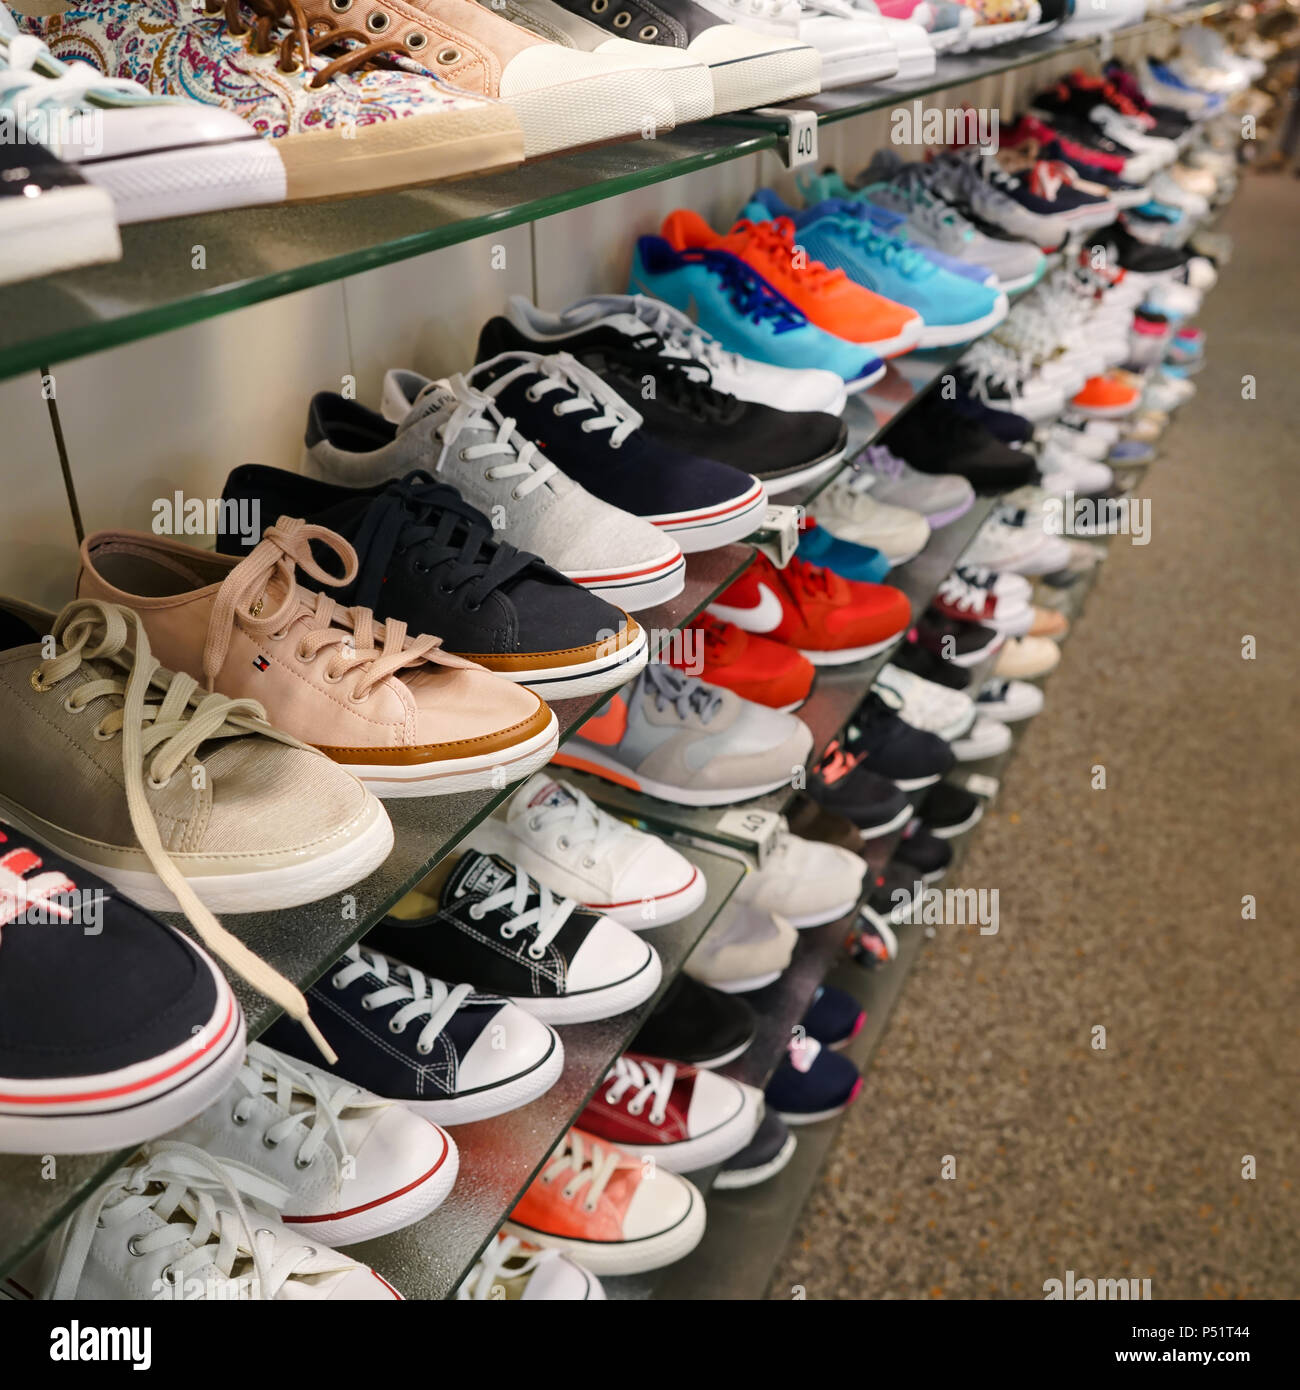 wholesale sneakers